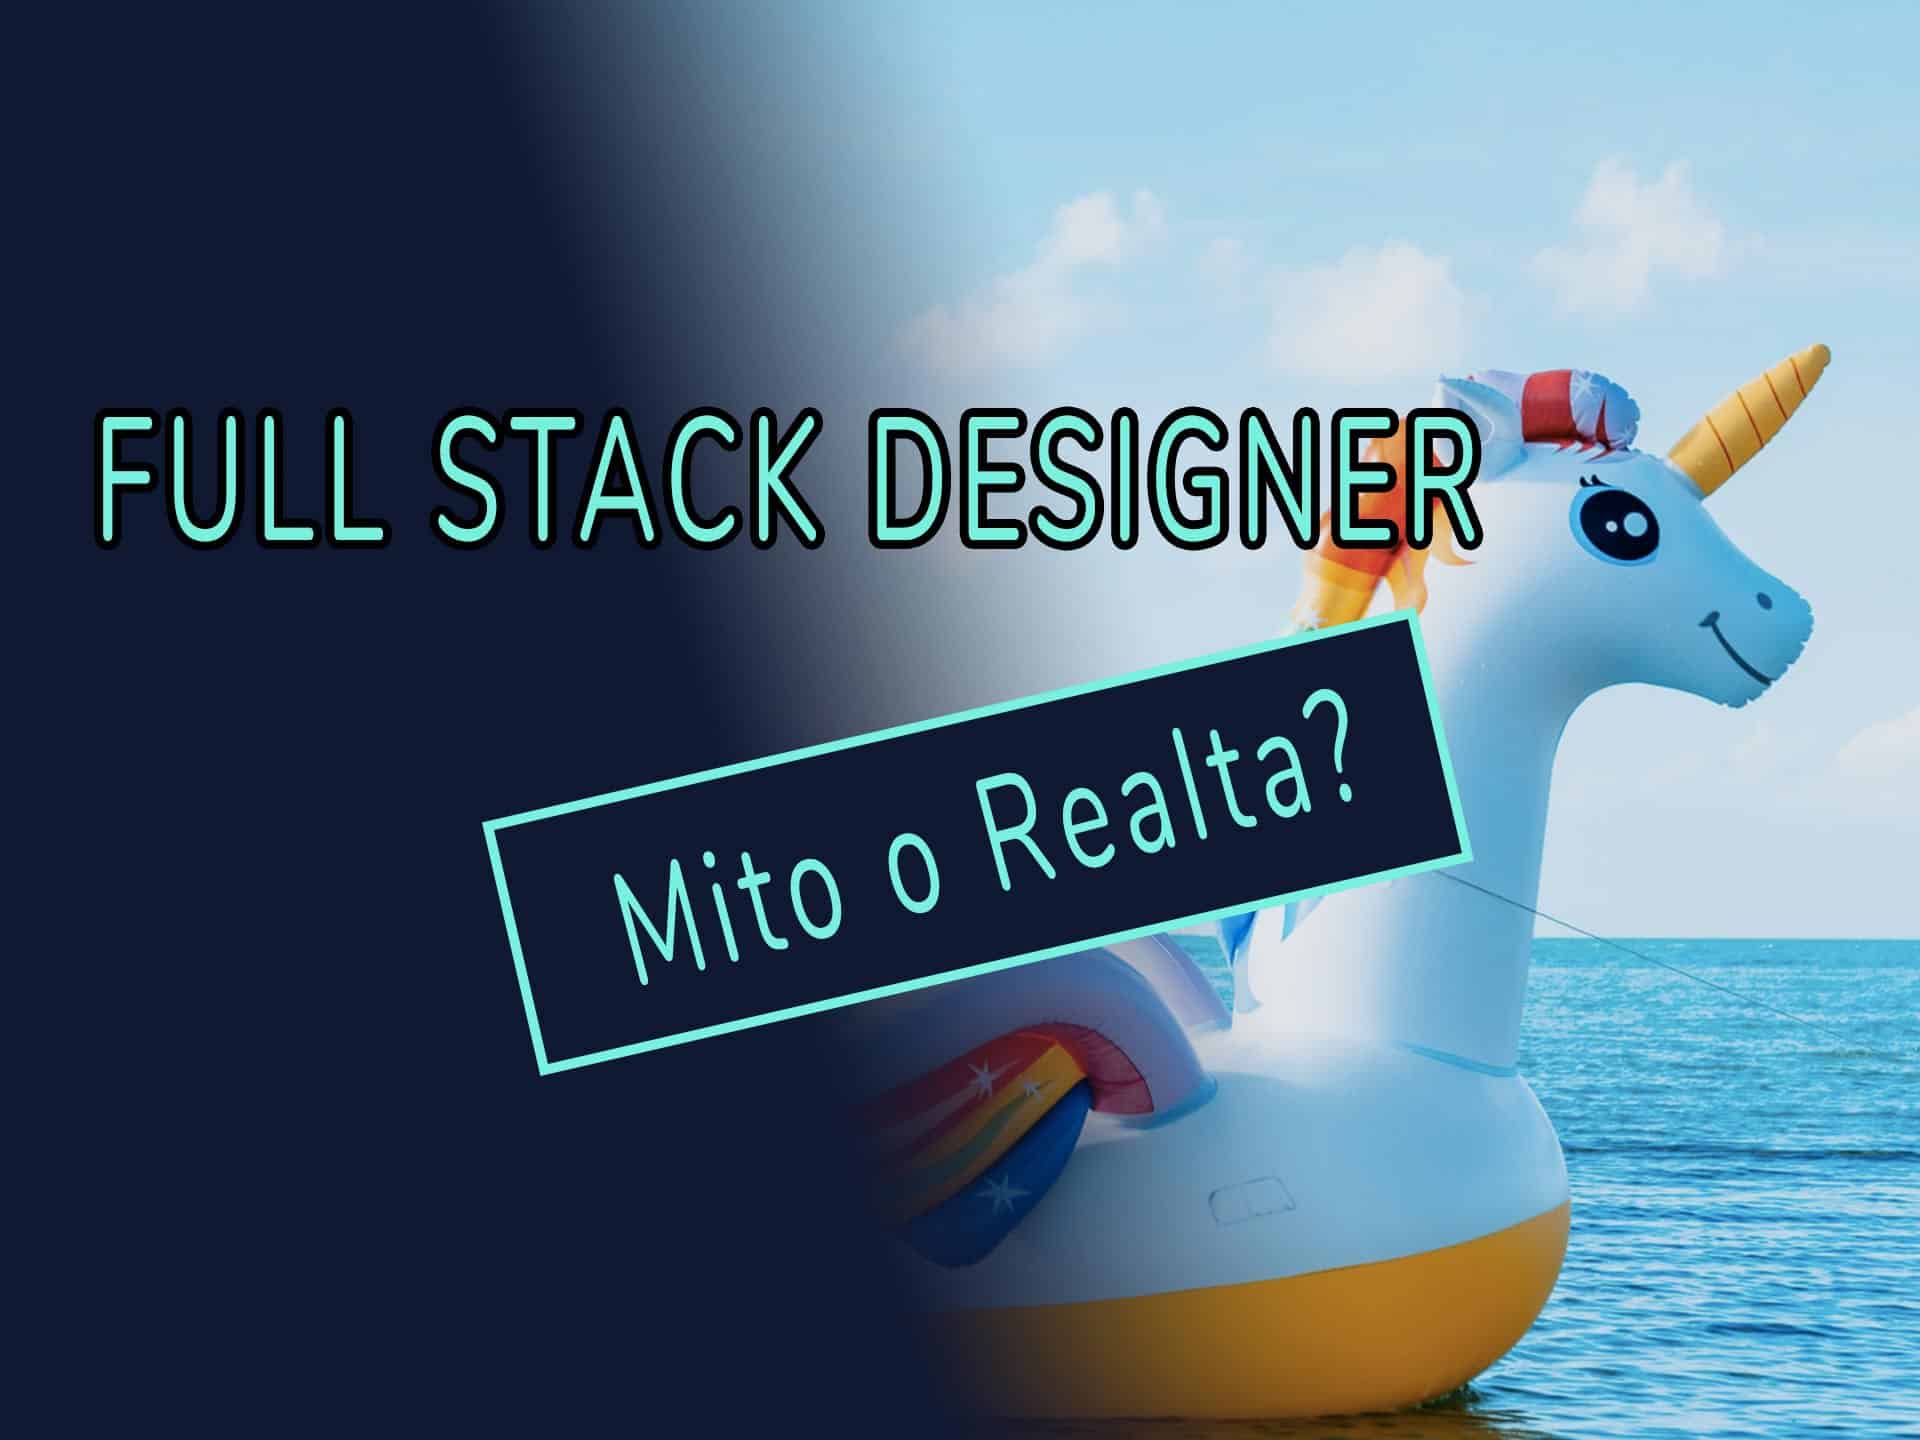 Full stack designer